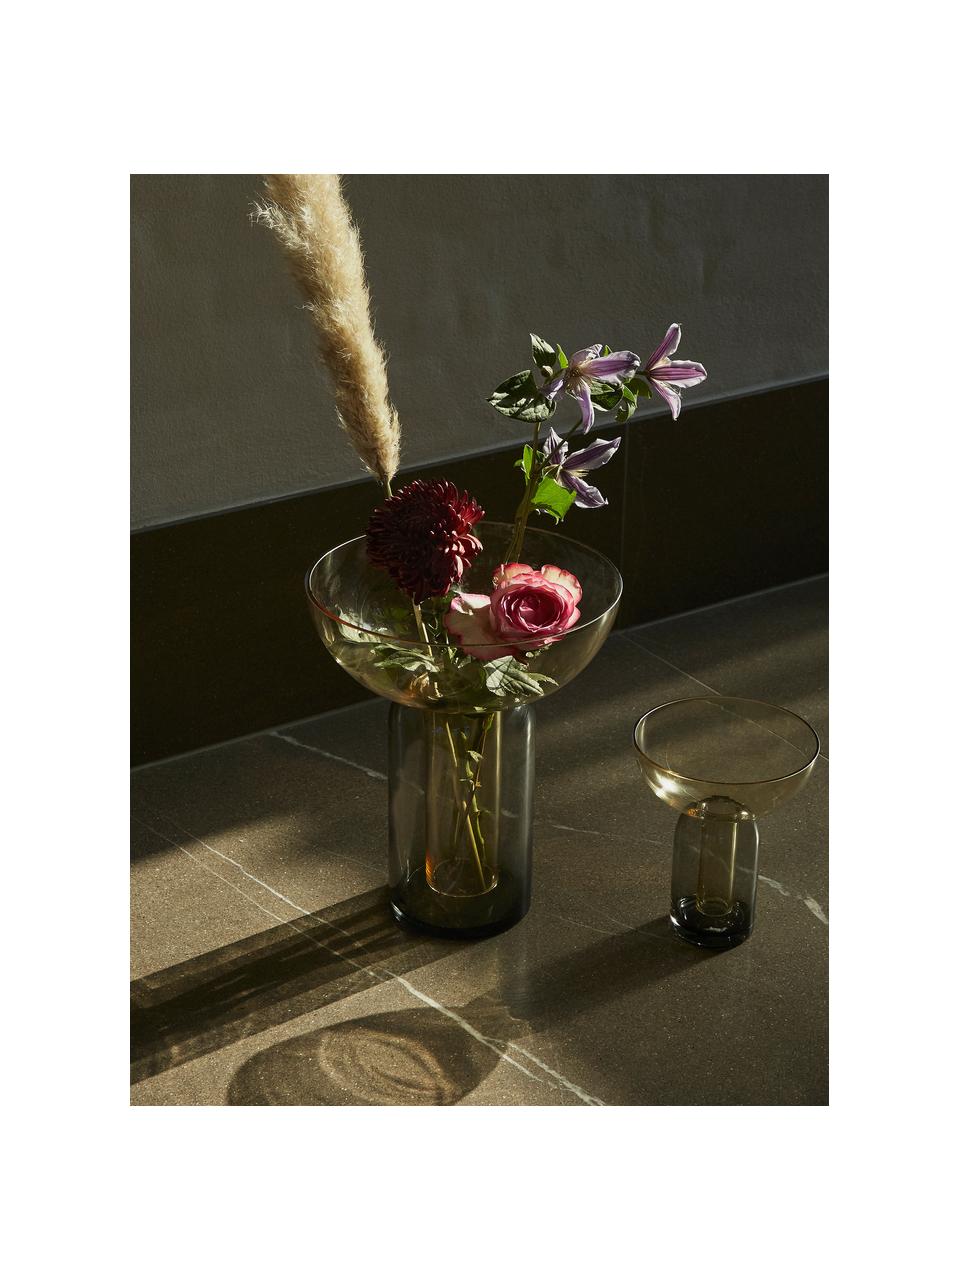 Skleněná váza Torus, V 33 cm, Sklo, Tmavě šedá, tmavě zelená, transparentní, Ø 25 cm, V 33 cm